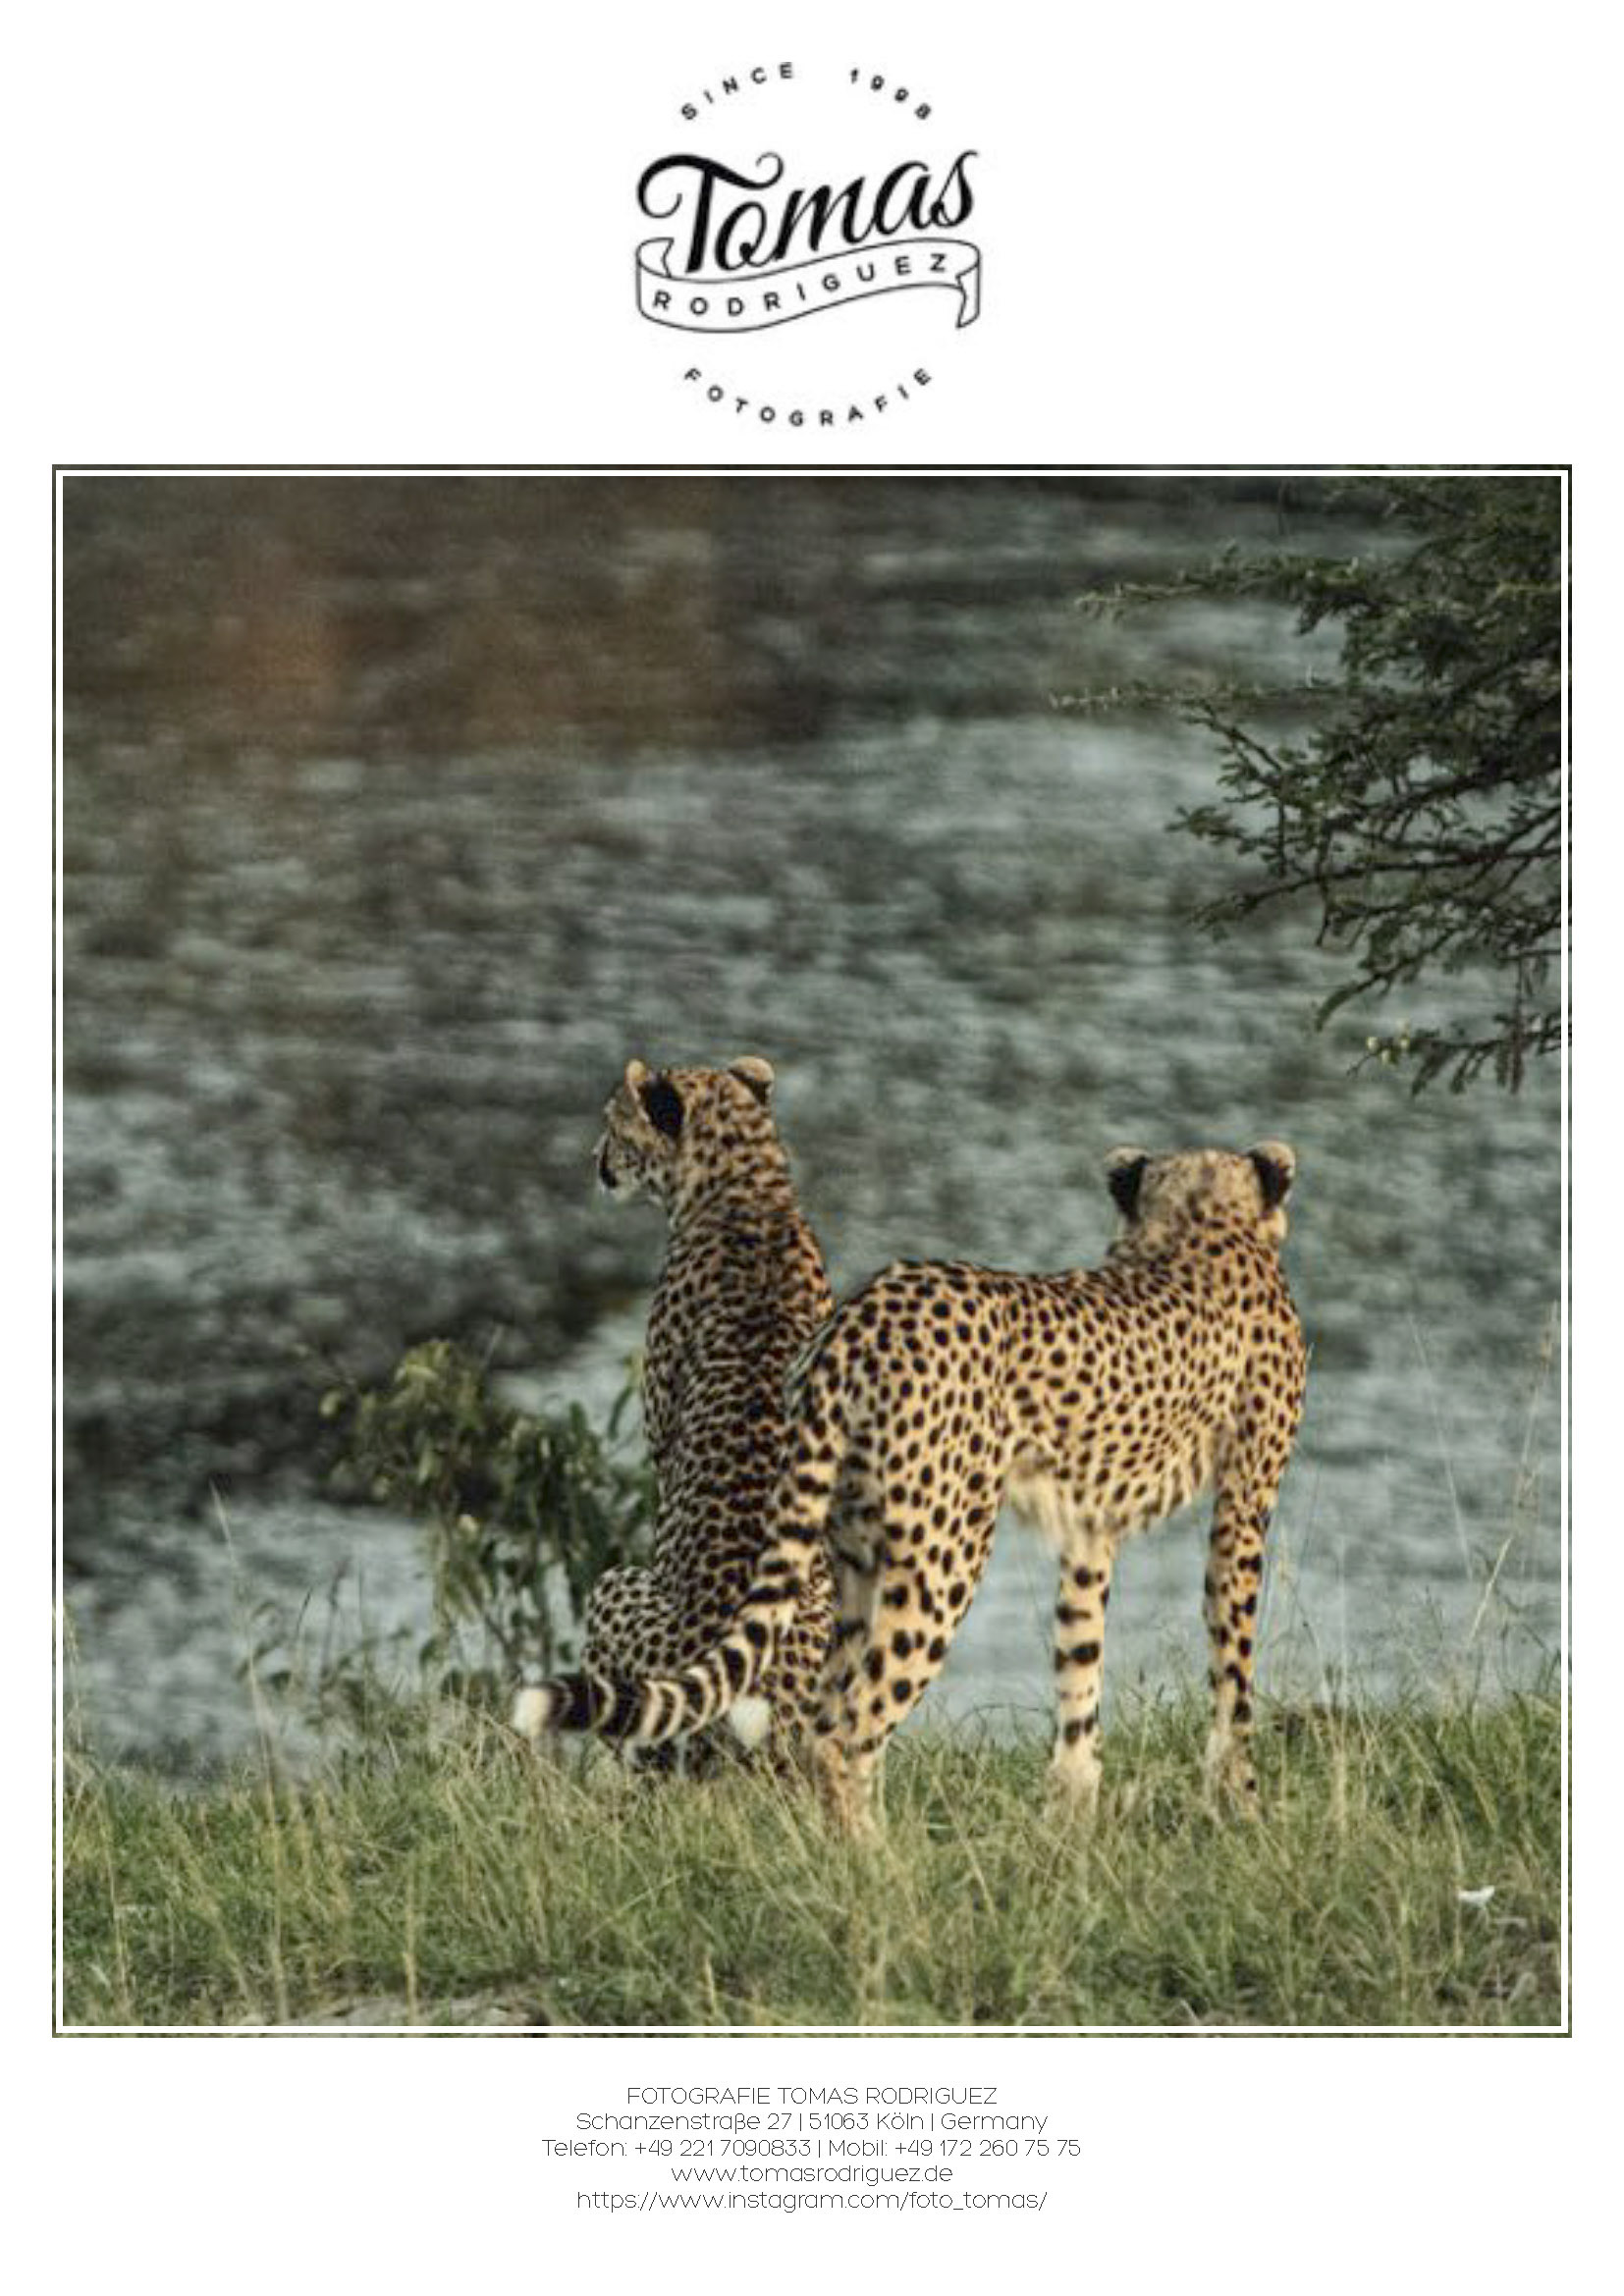 Zwei Geparden stehen im Gras neben einem Gewässer und blicken von der Kamera weg, einer blickt zurück. Das Bild hat einen Vintage-Filter und enthält oben und unten das Logo und Details des Fotografen. © Fotografie Tomas Rodriguez